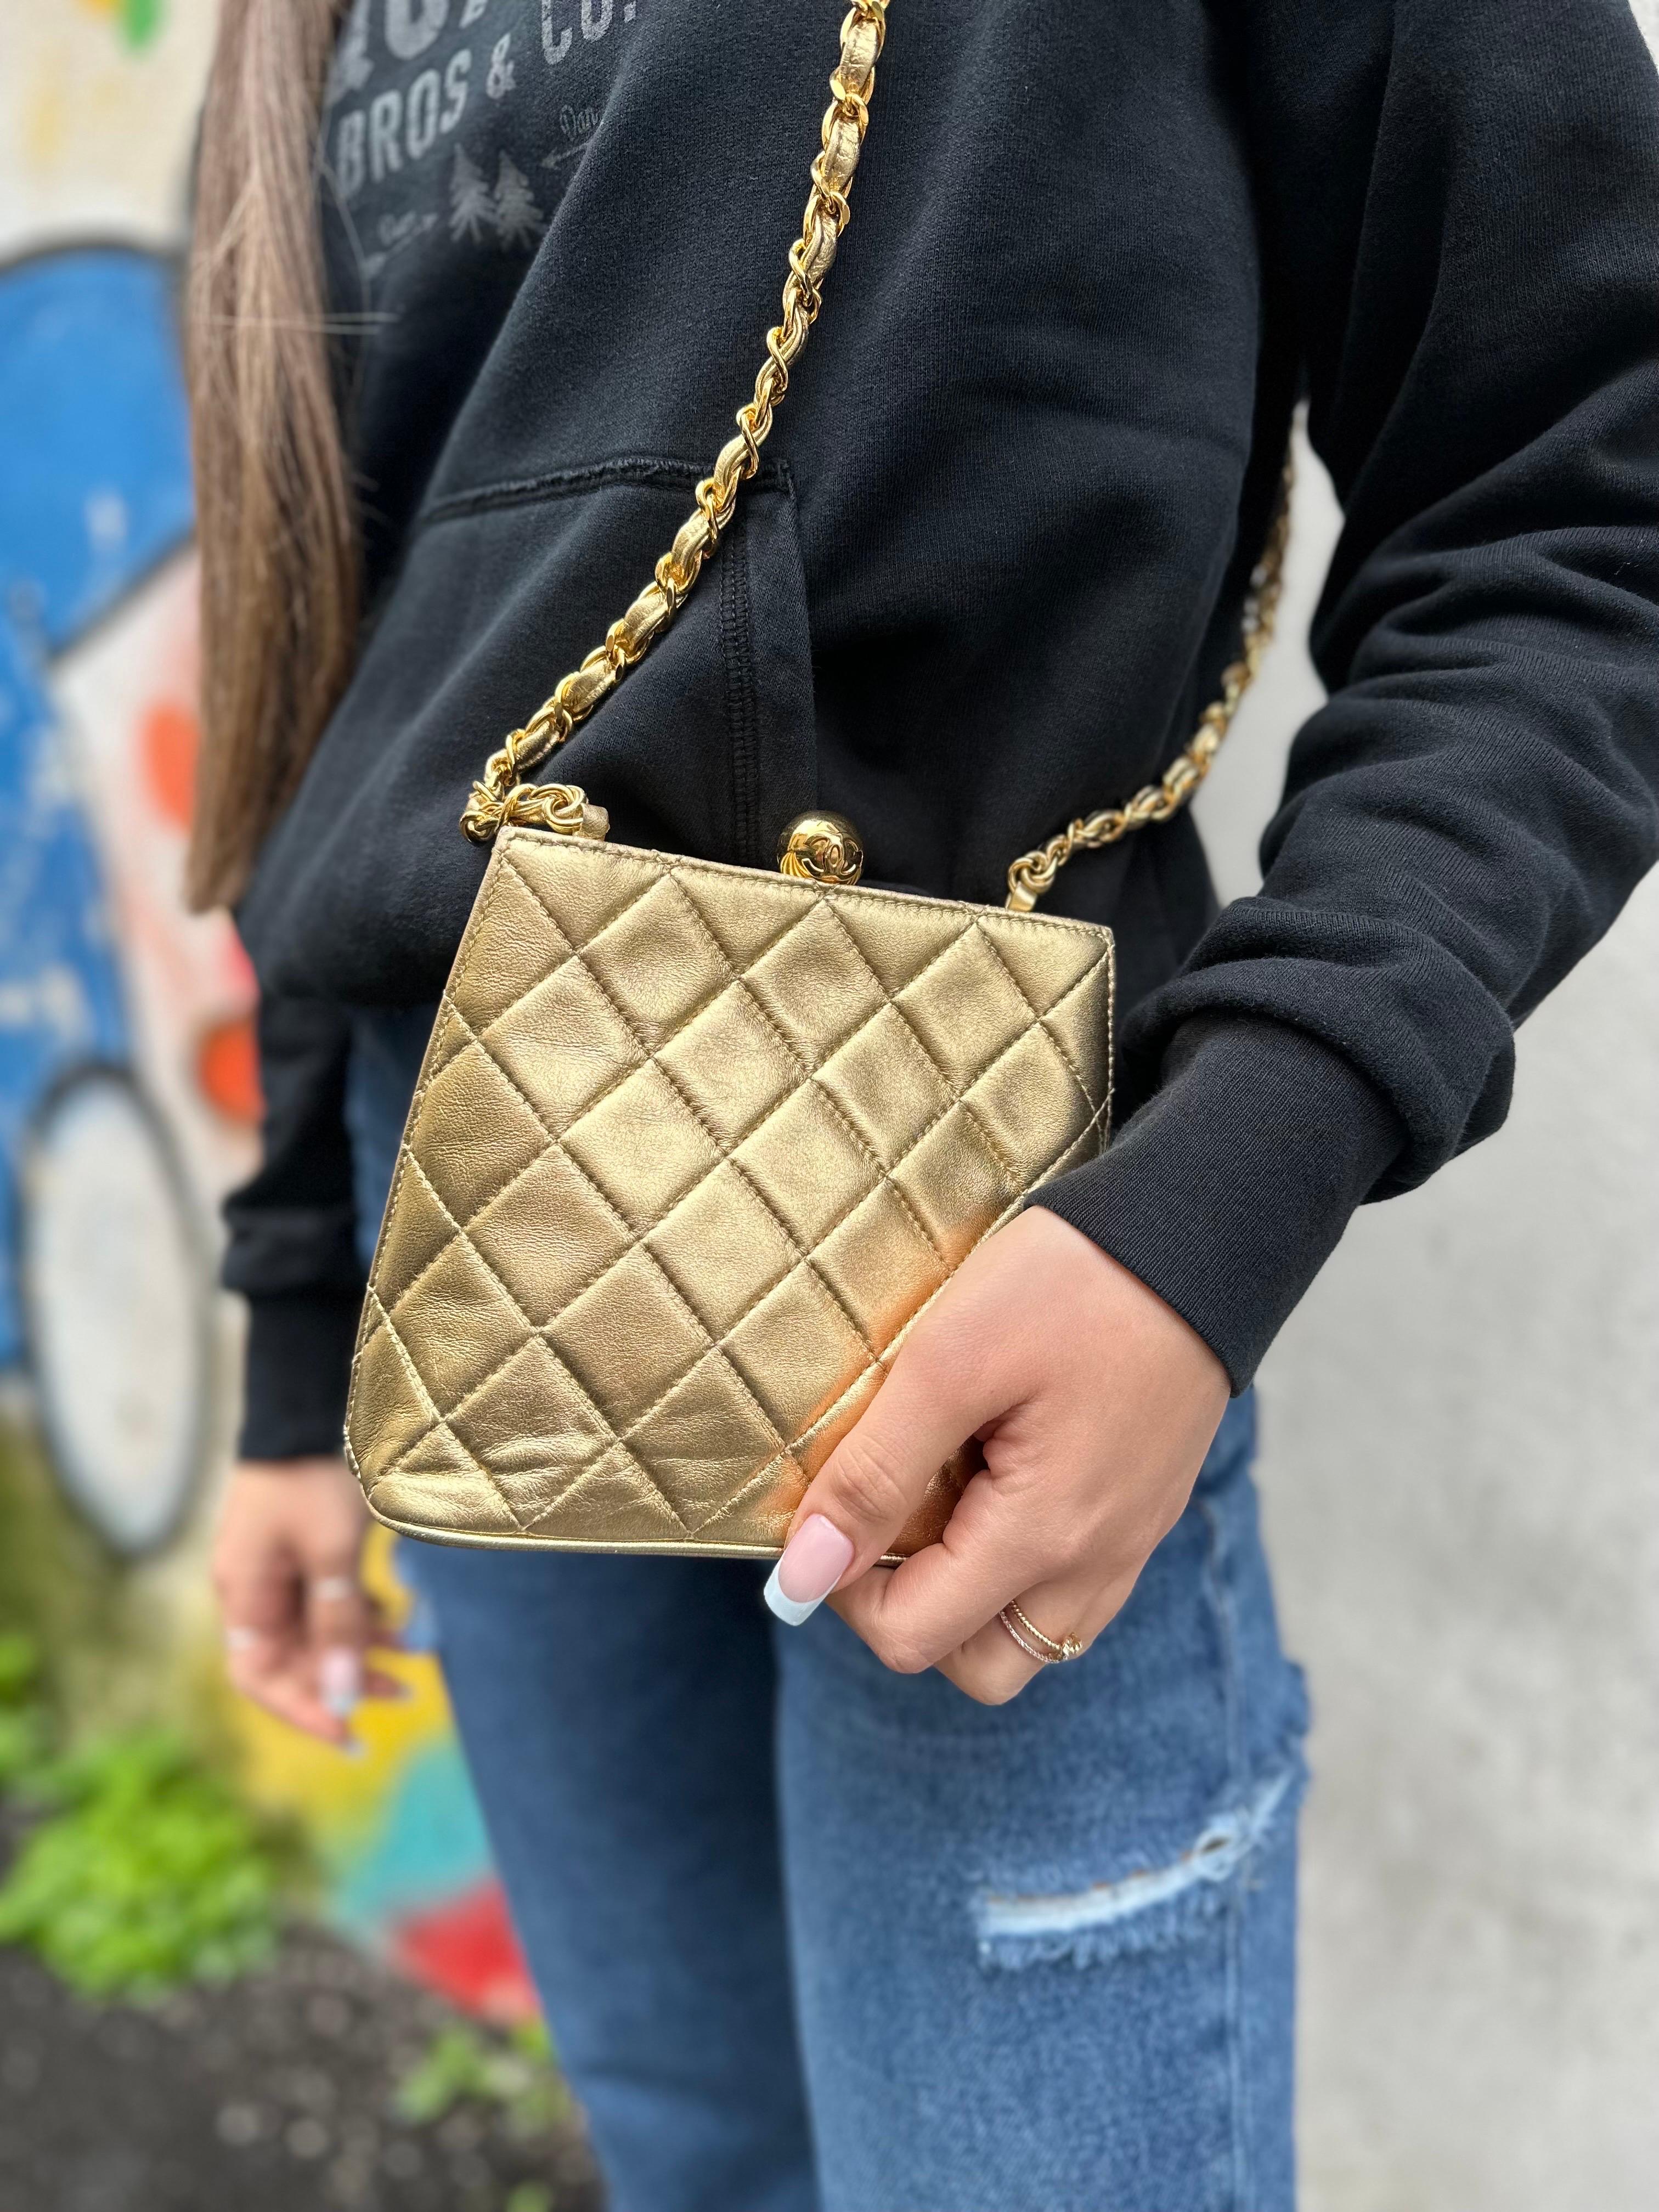 CHANEL Vintage Paris Matelasse Limited Flap Bag – Fashion Reloved